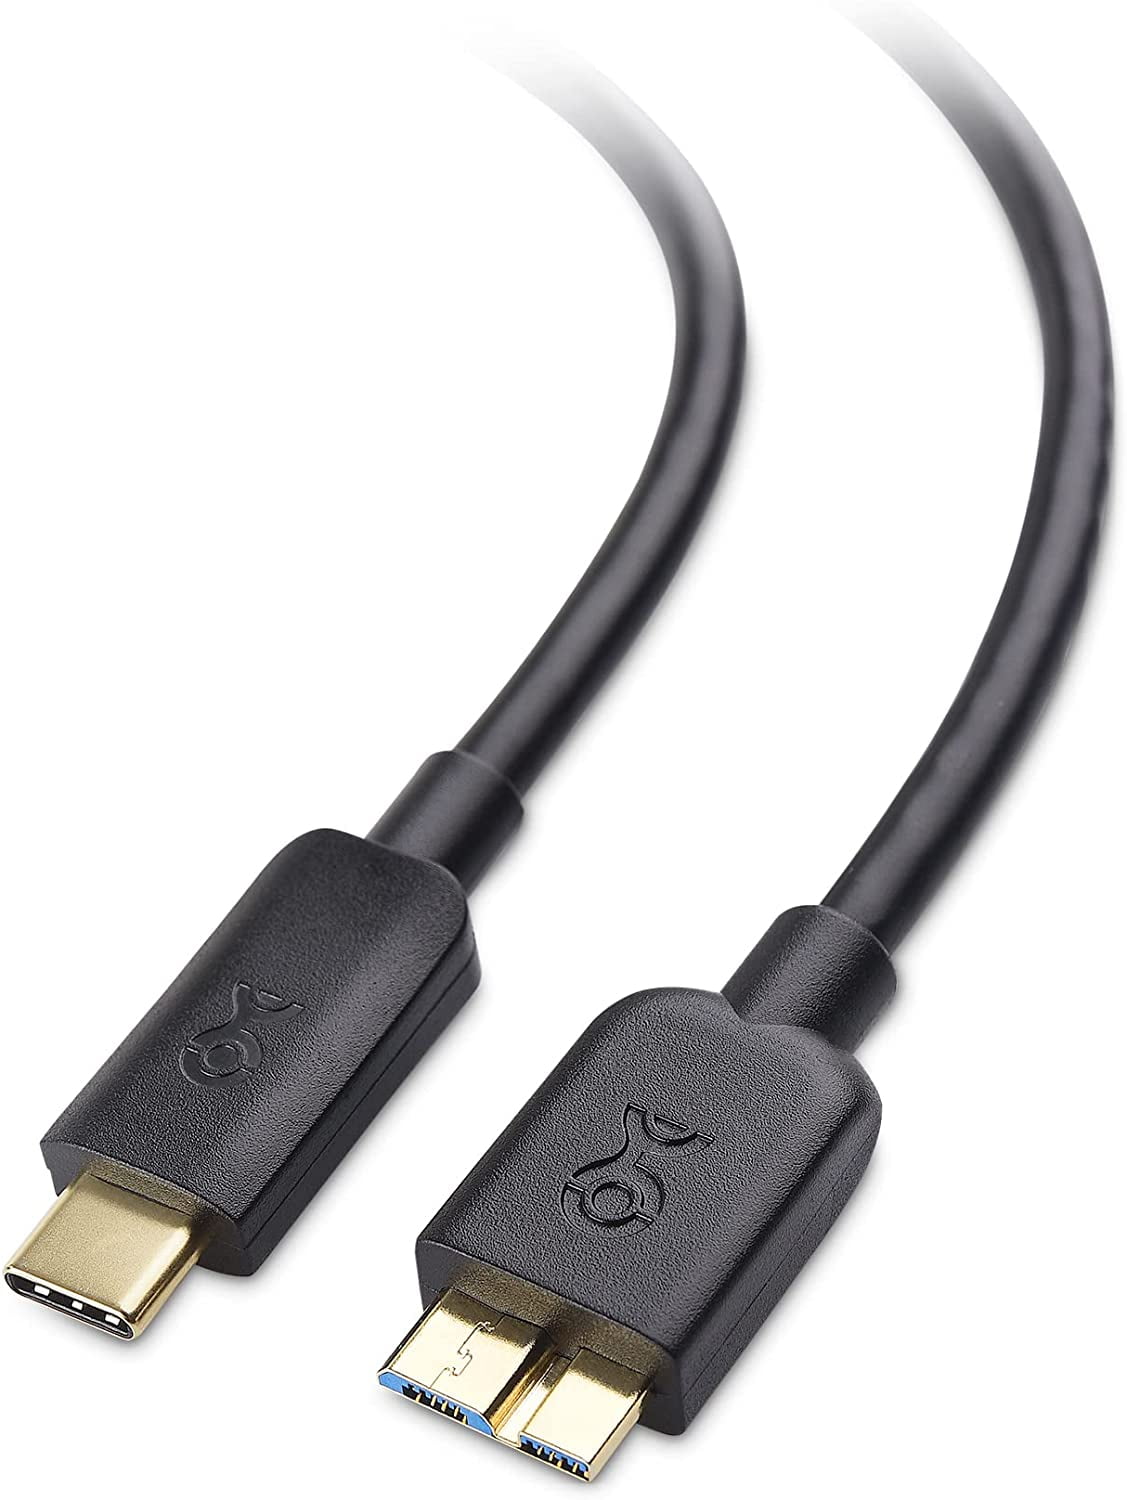 Zeggen Verheugen huren Cable Matters USB C to Micro USB 3.0 Cable (USB C to Micro B 3.0, USB C  Hard Drive Cable) in Black 3.3 Feet - Walmart.com